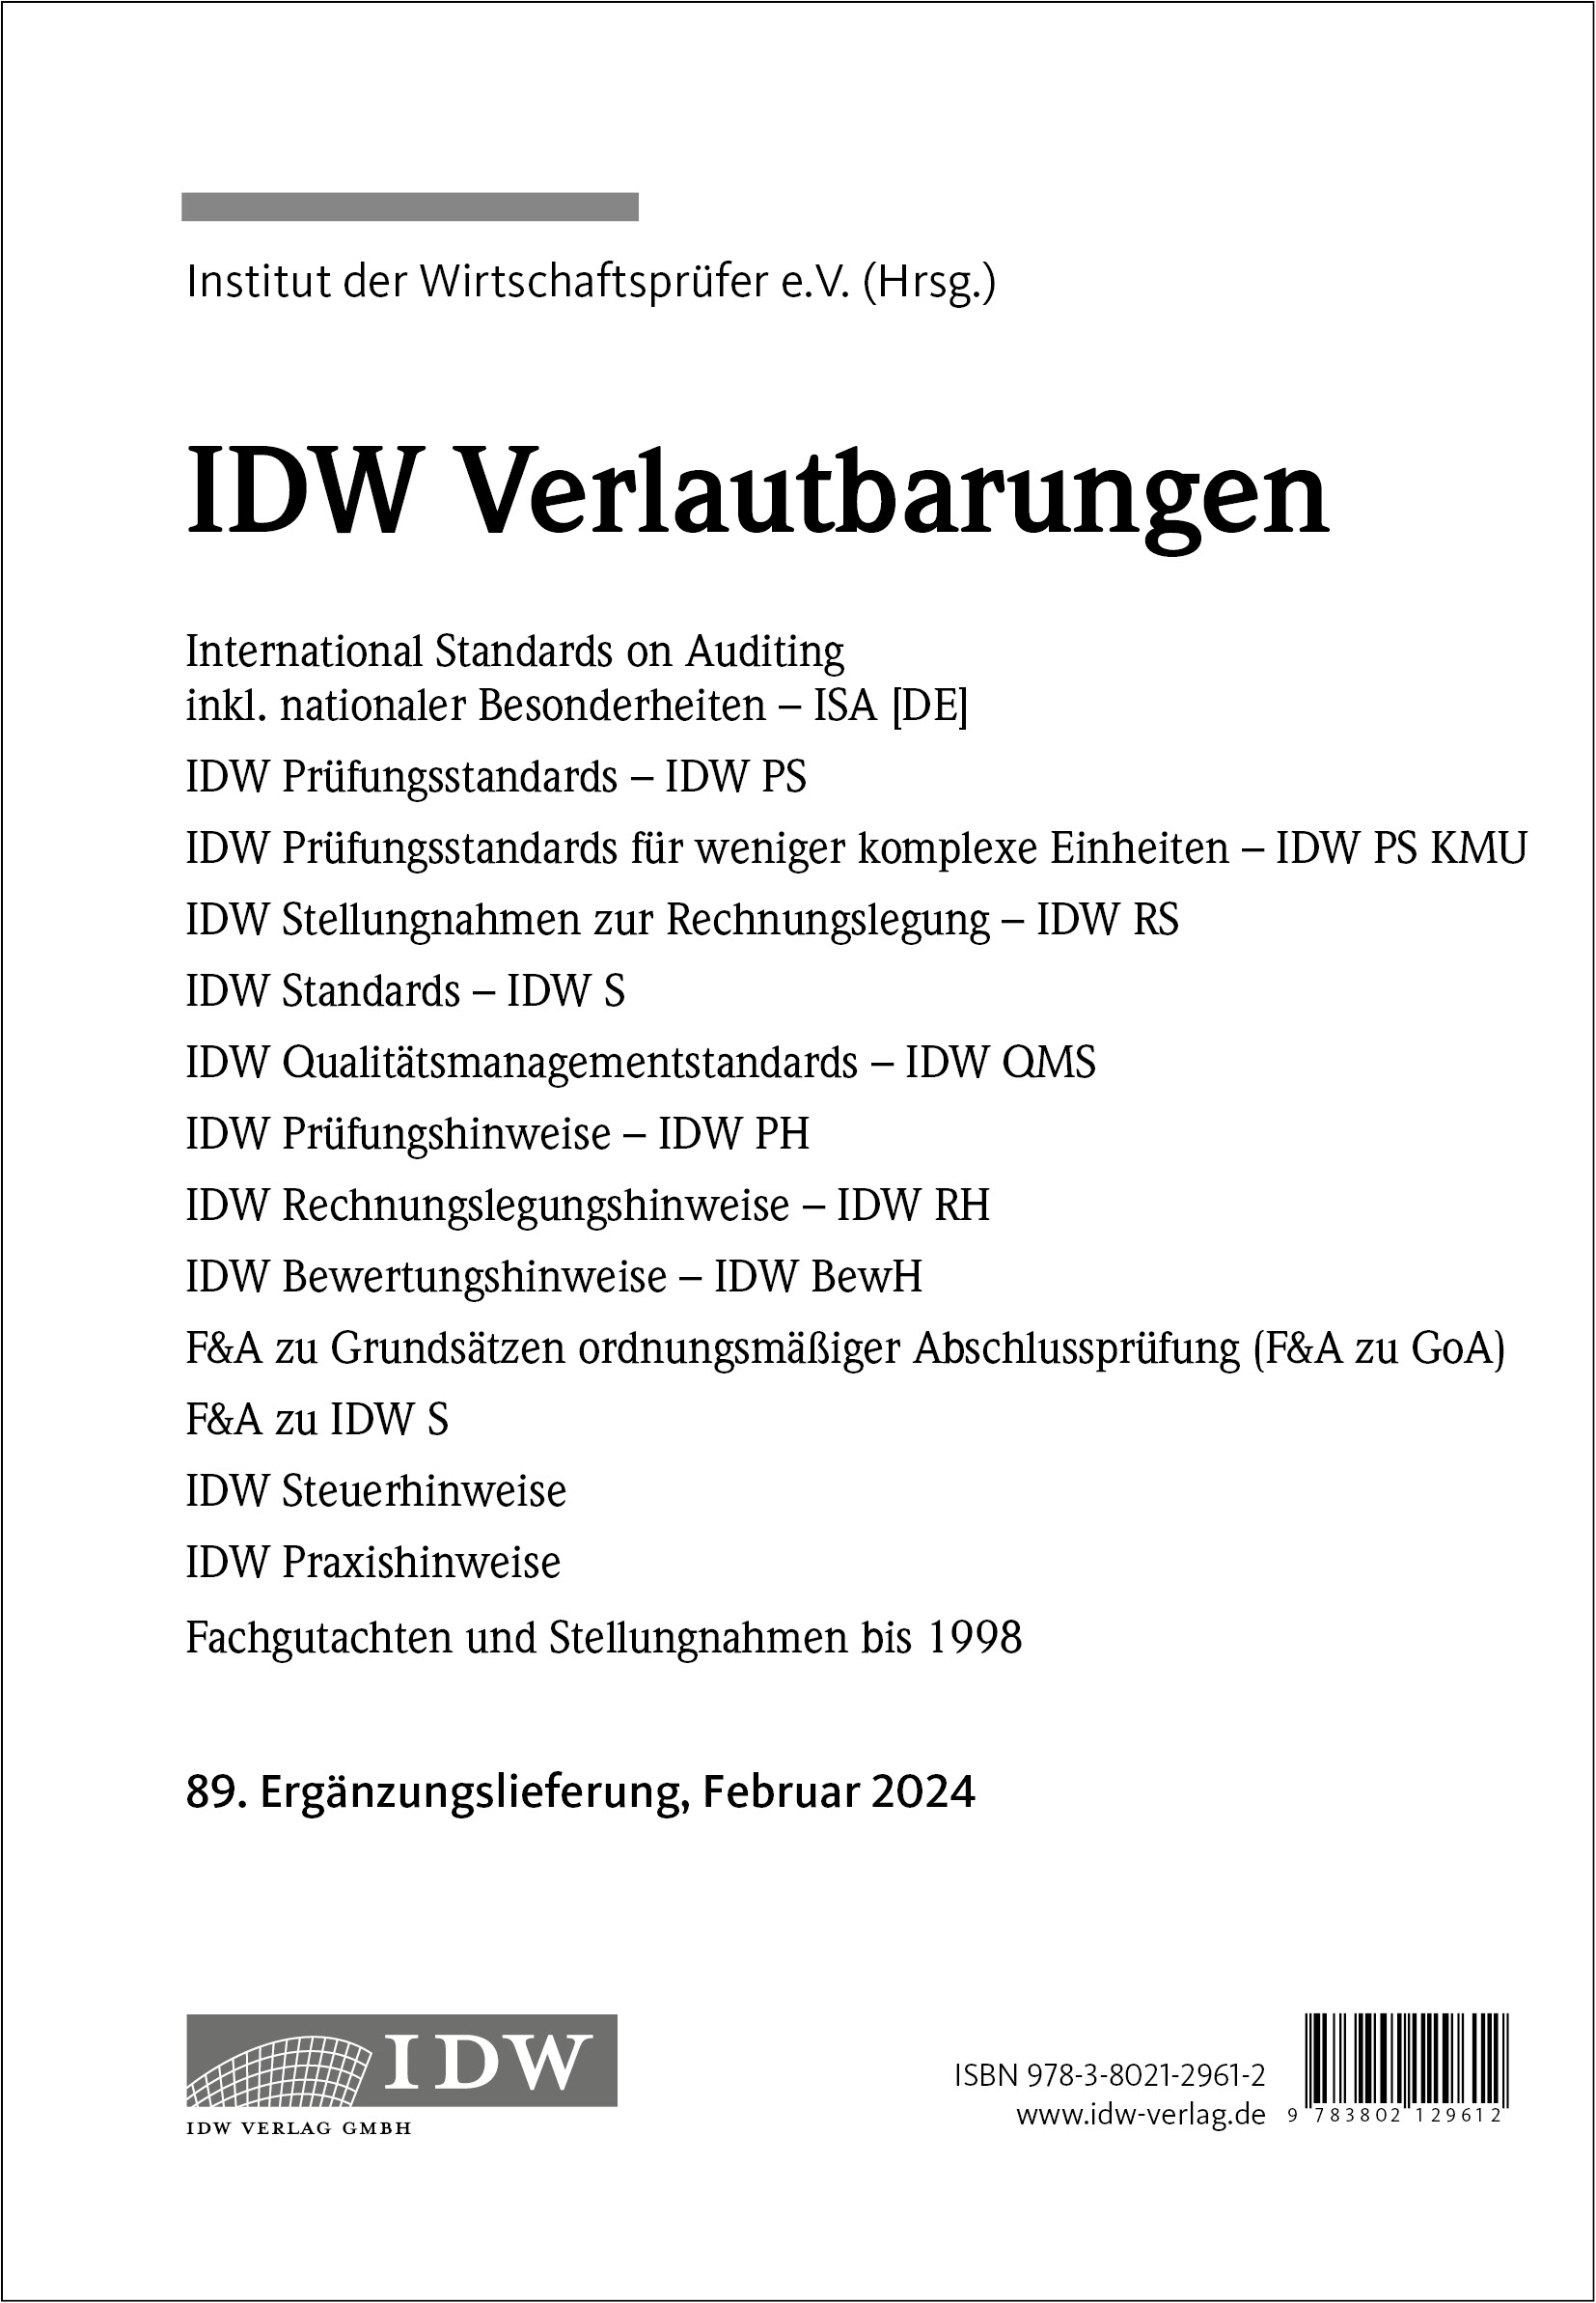 IDW Verlautbarungen 89. Ergänzungslieferung Februar 2024